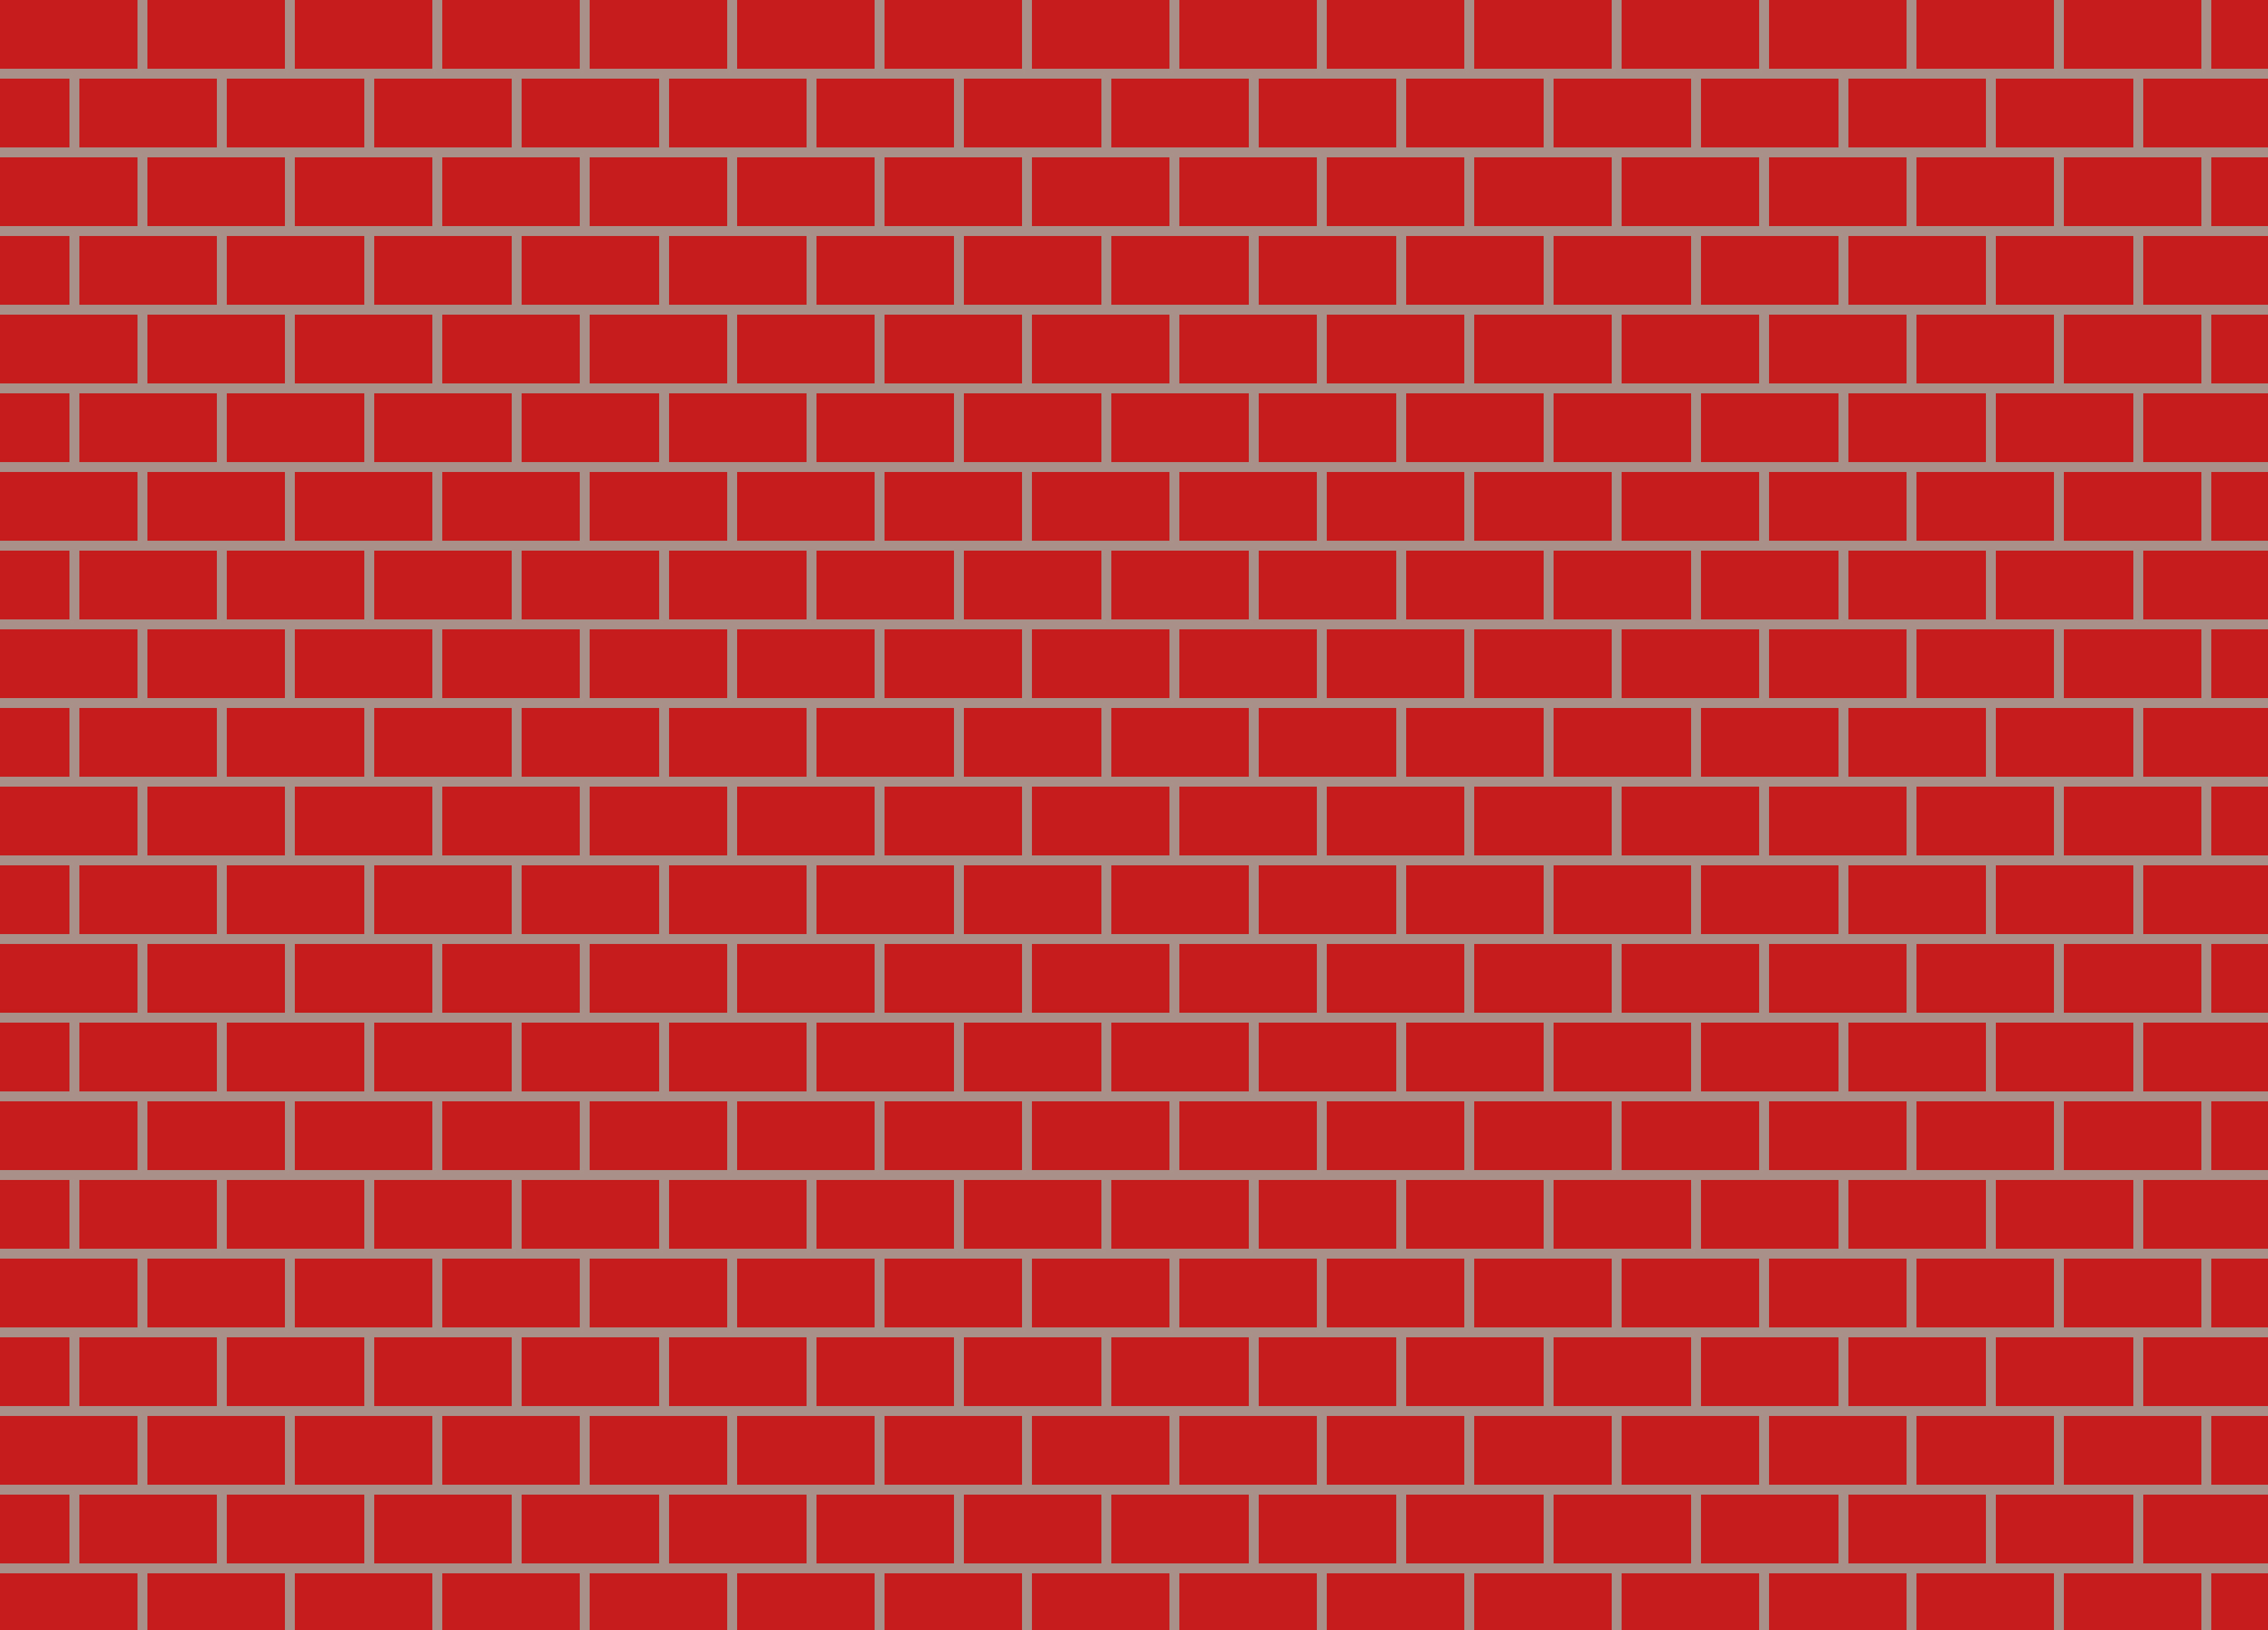 Brick Wall Free Images At Clker Com Vector Clip Art Online